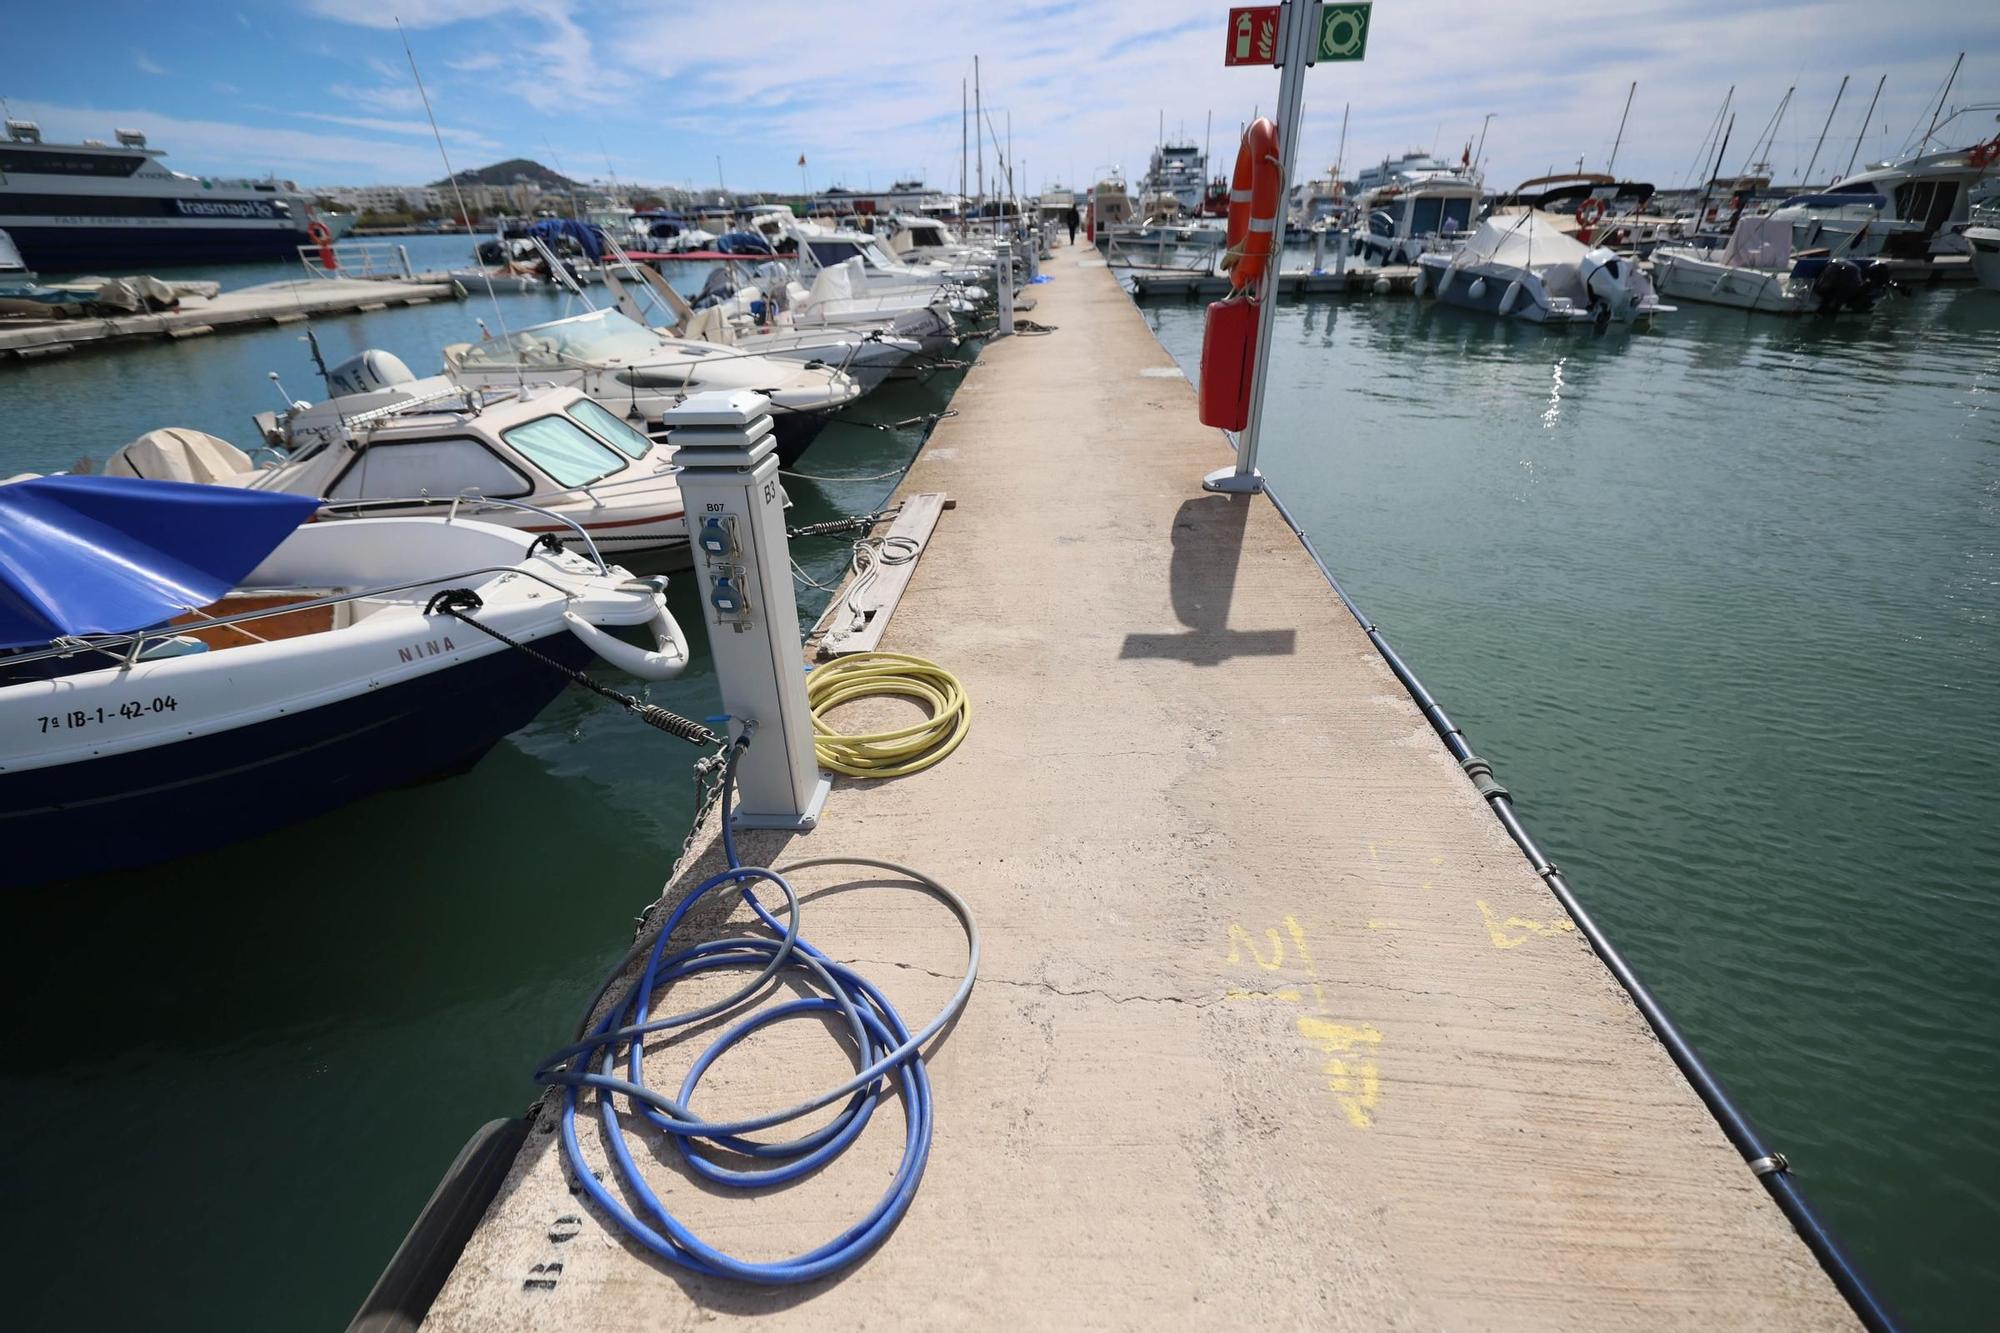 Galería: Socios del CNI viven su pérdida como un paso más hacia la gentrificación de Ibiza